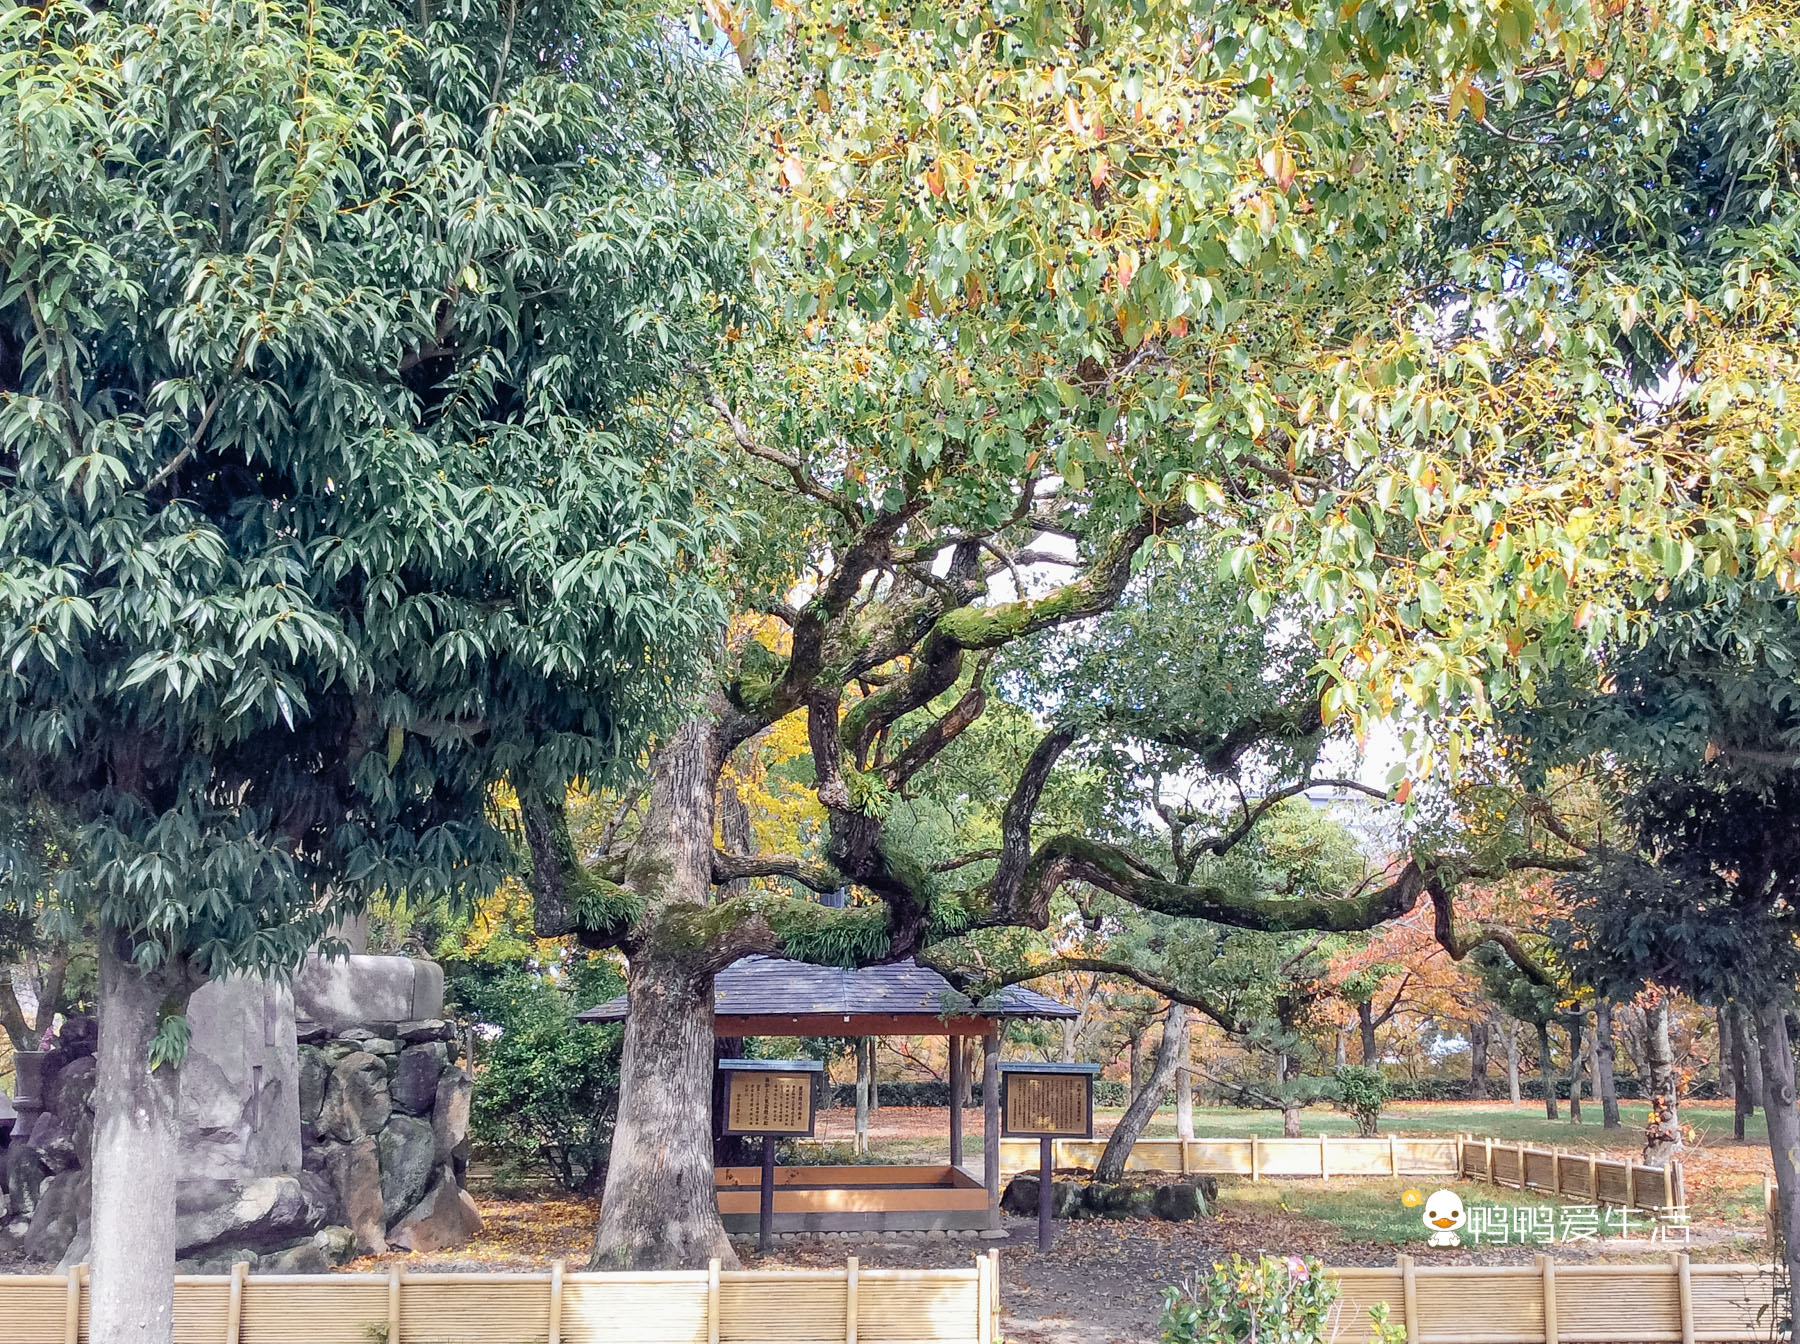 日本大阪最大的公园 被5个地铁站包围 花开时节美不胜收 阿波罗新闻网